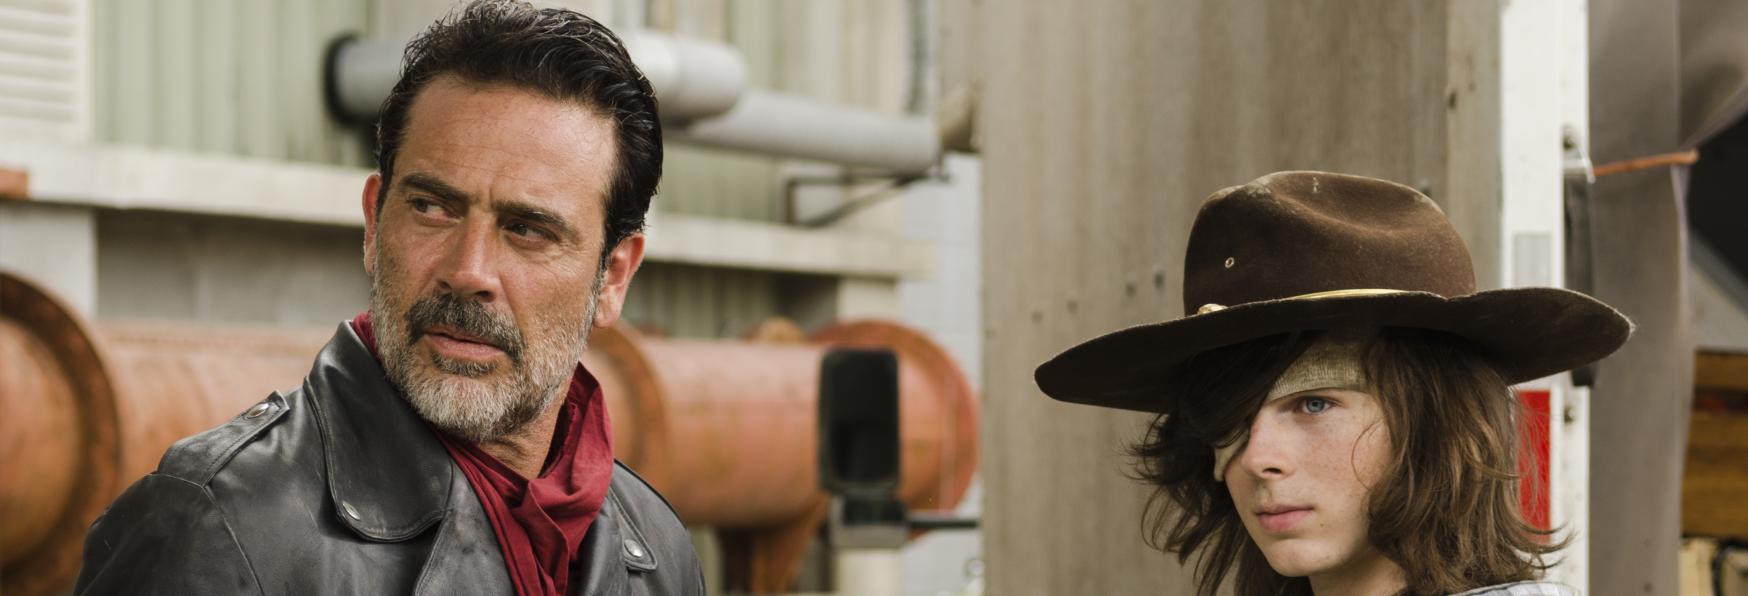 The Walking Dead: la Scena di Carl e Negan fu Modificata per la TV